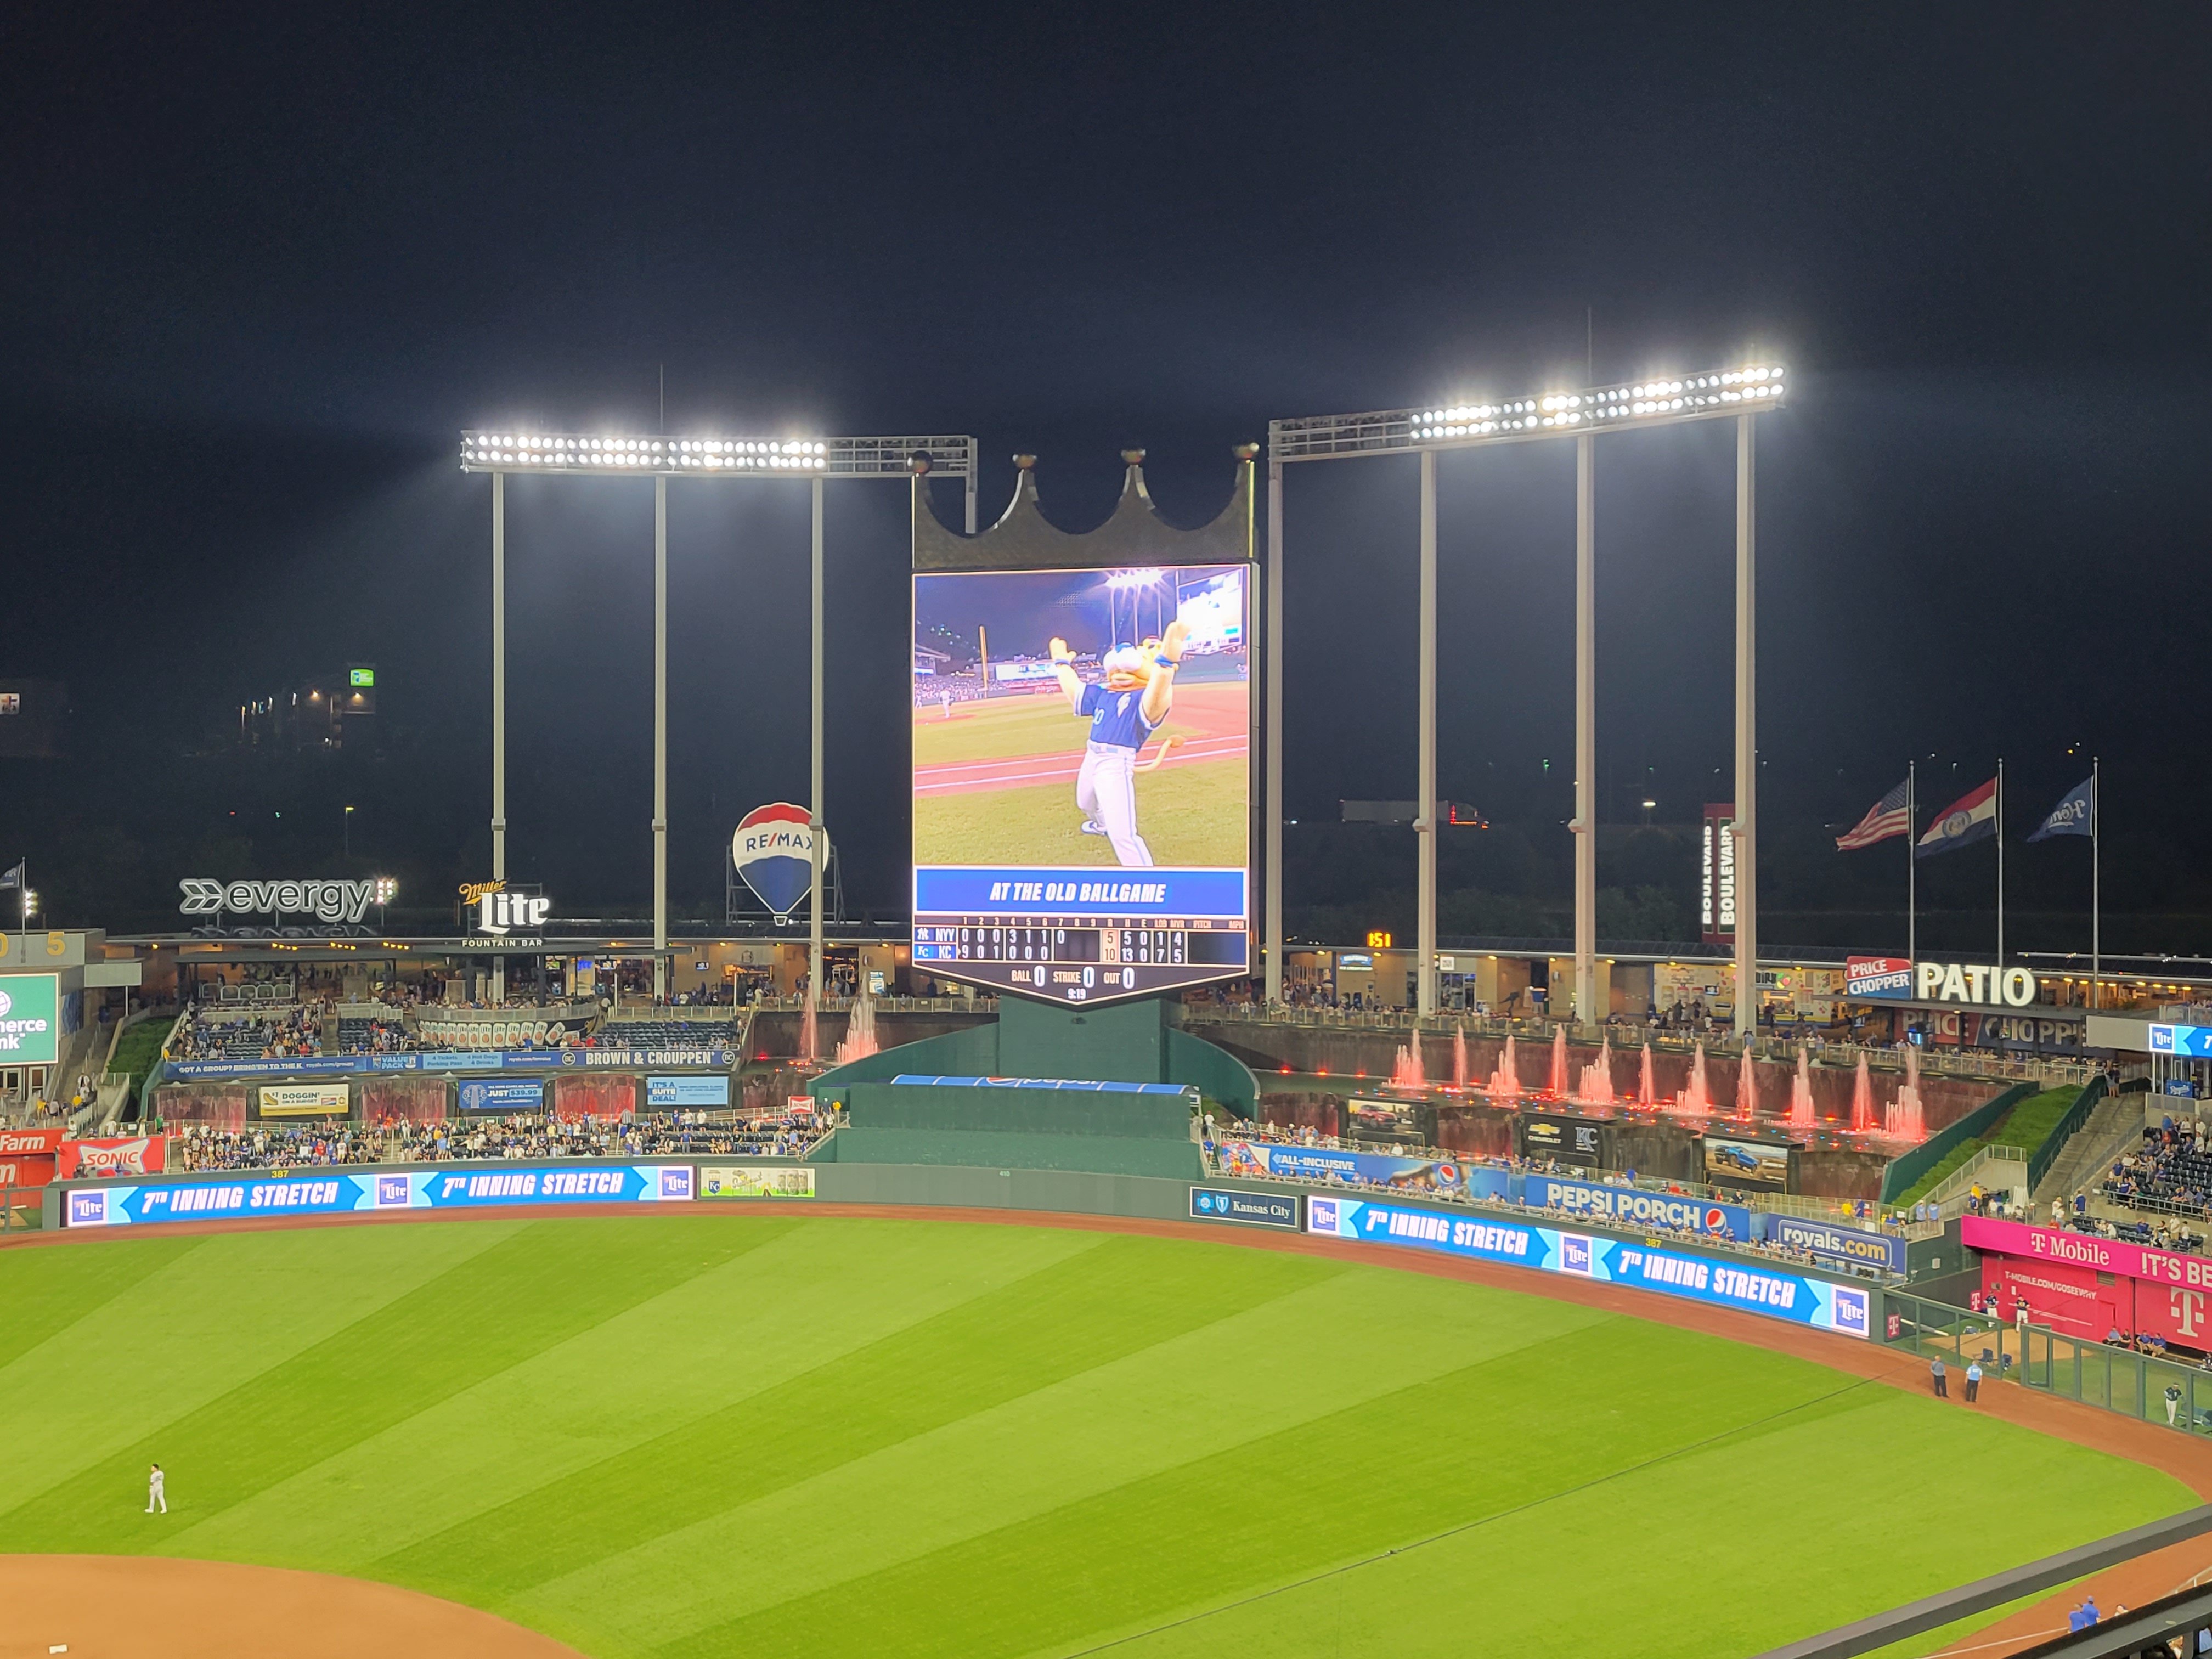 2015 World Series Game Used Lineup Card - Kansas City Royals at